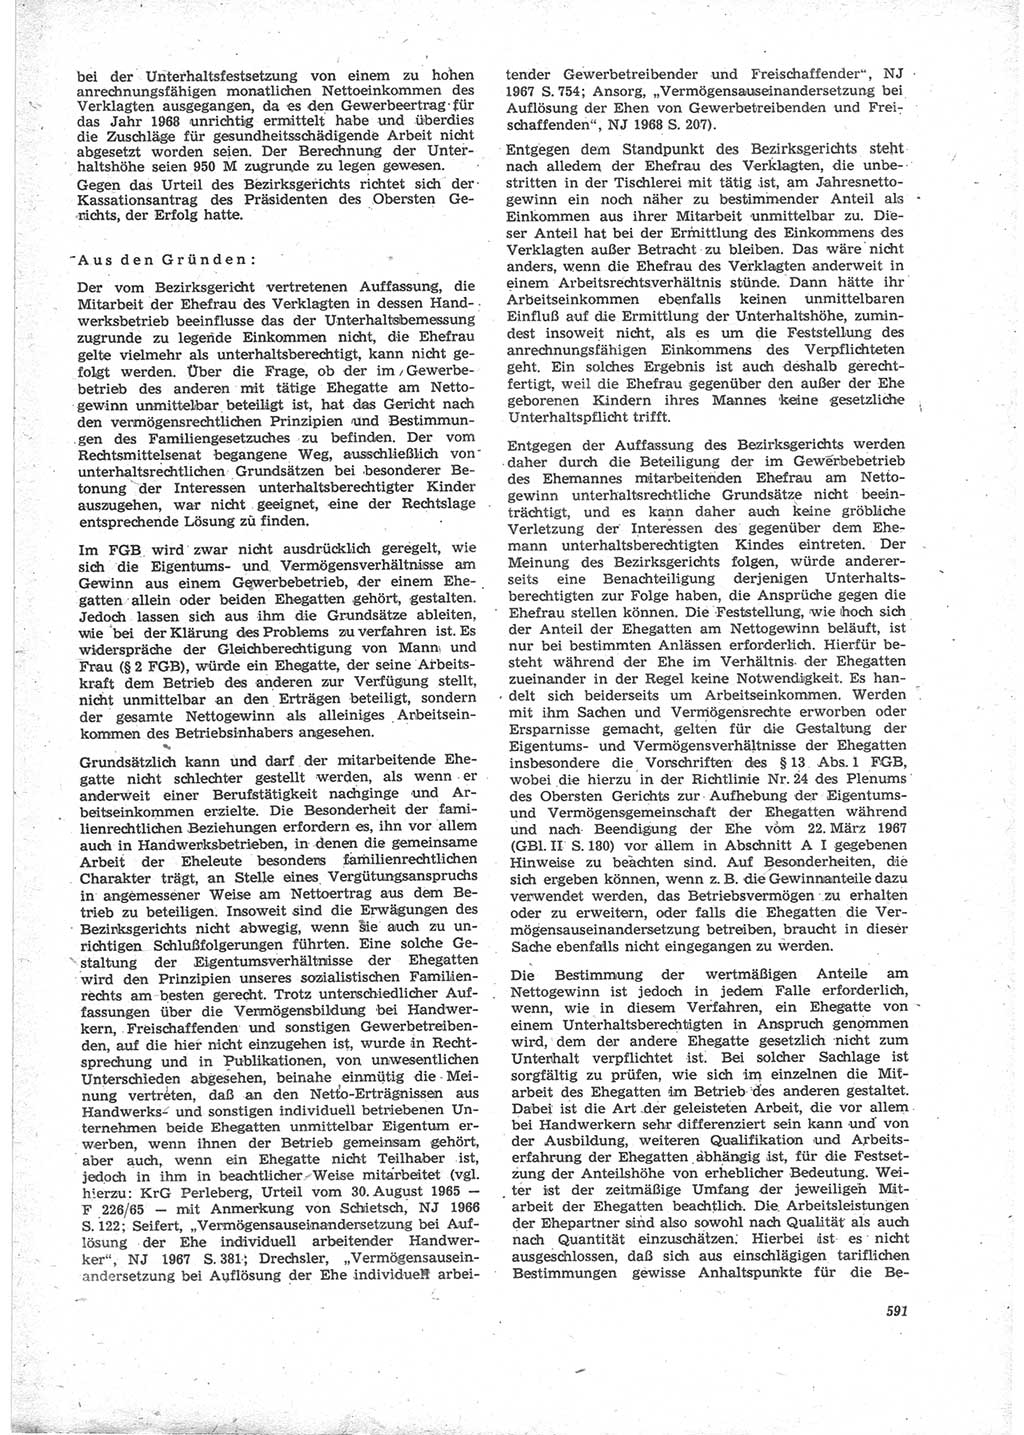 Neue Justiz (NJ), Zeitschrift für Recht und Rechtswissenschaft [Deutsche Demokratische Republik (DDR)], 24. Jahrgang 1970, Seite 591 (NJ DDR 1970, S. 591)